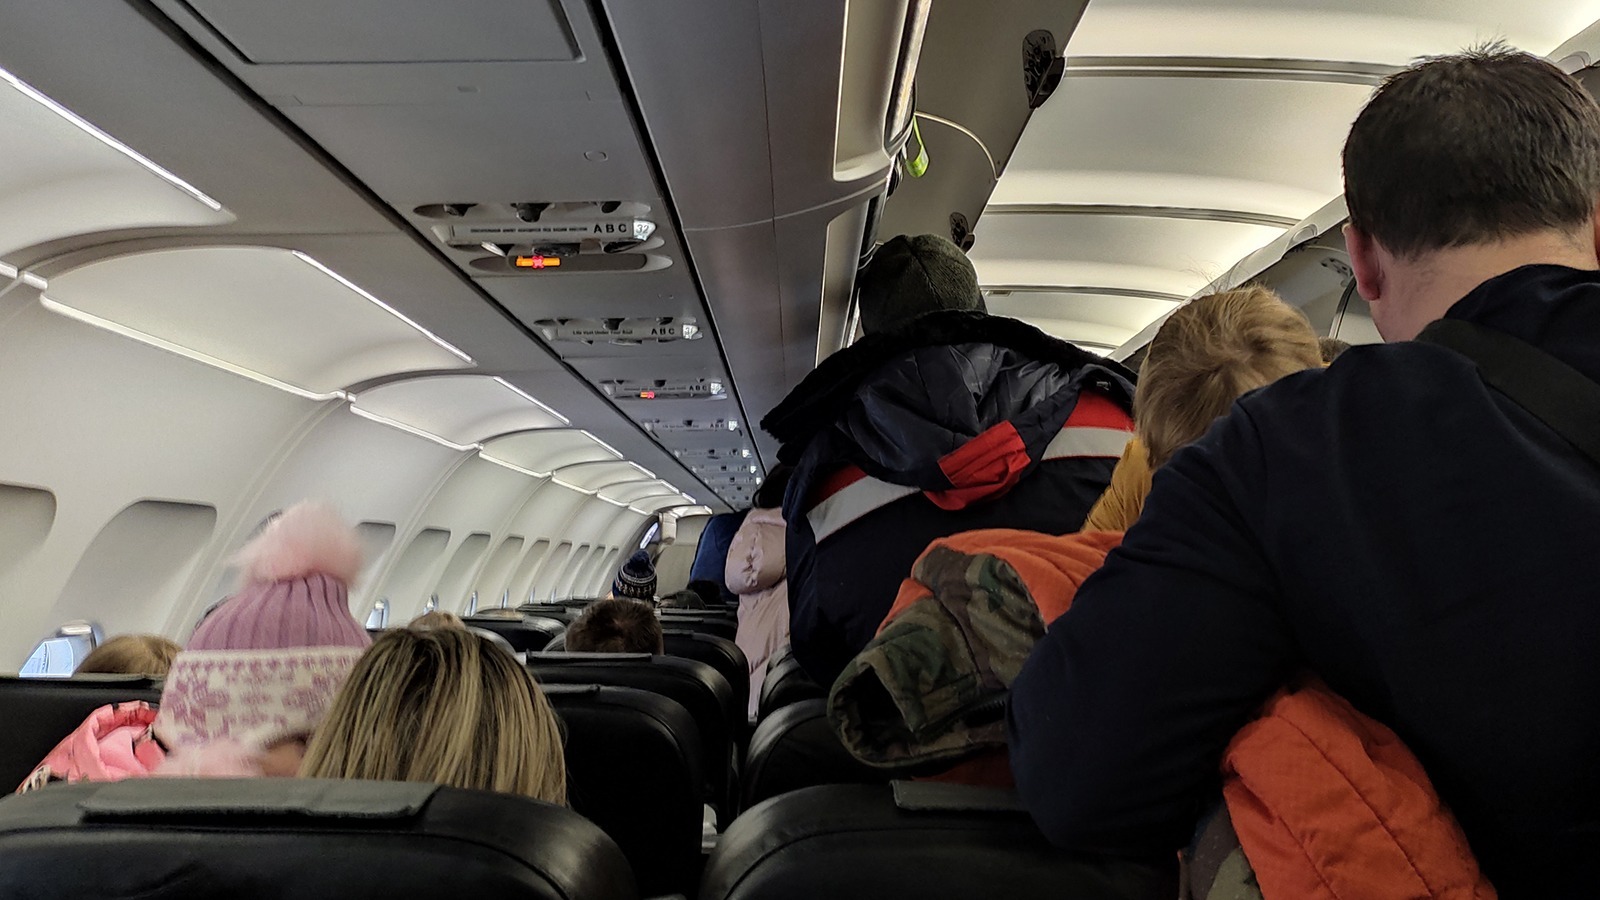 В Сочи на одном из рейсов в самолете произошел конфликт экипажа с пассажирами